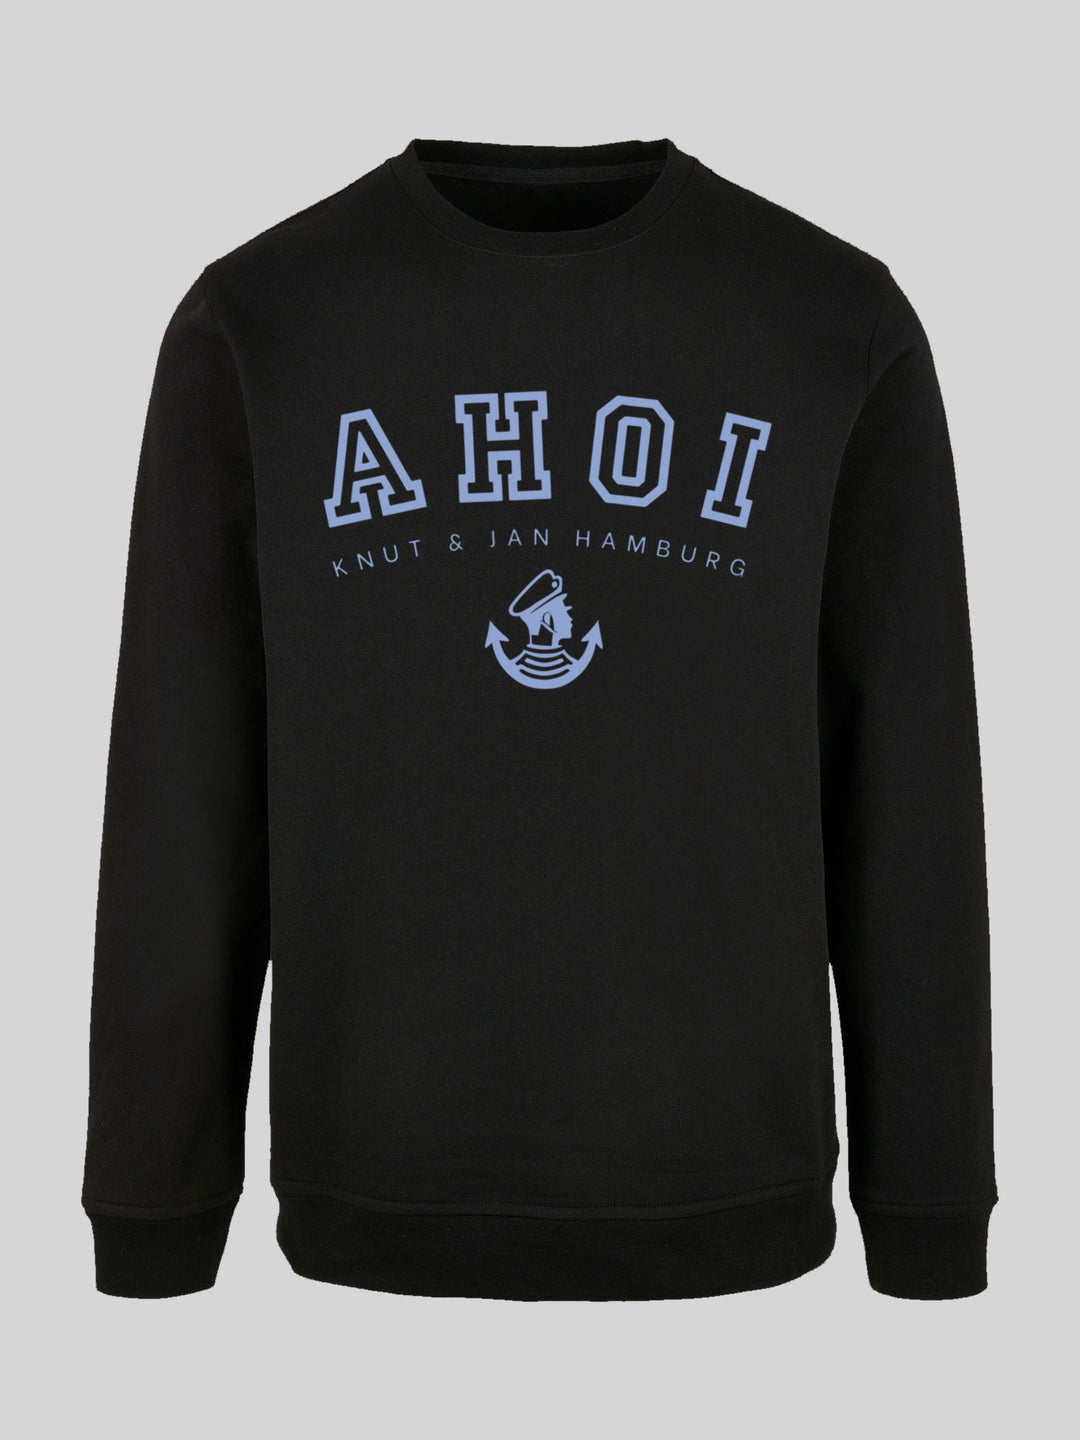 PIET | Sweatshirt Pullover Herren Ahoi